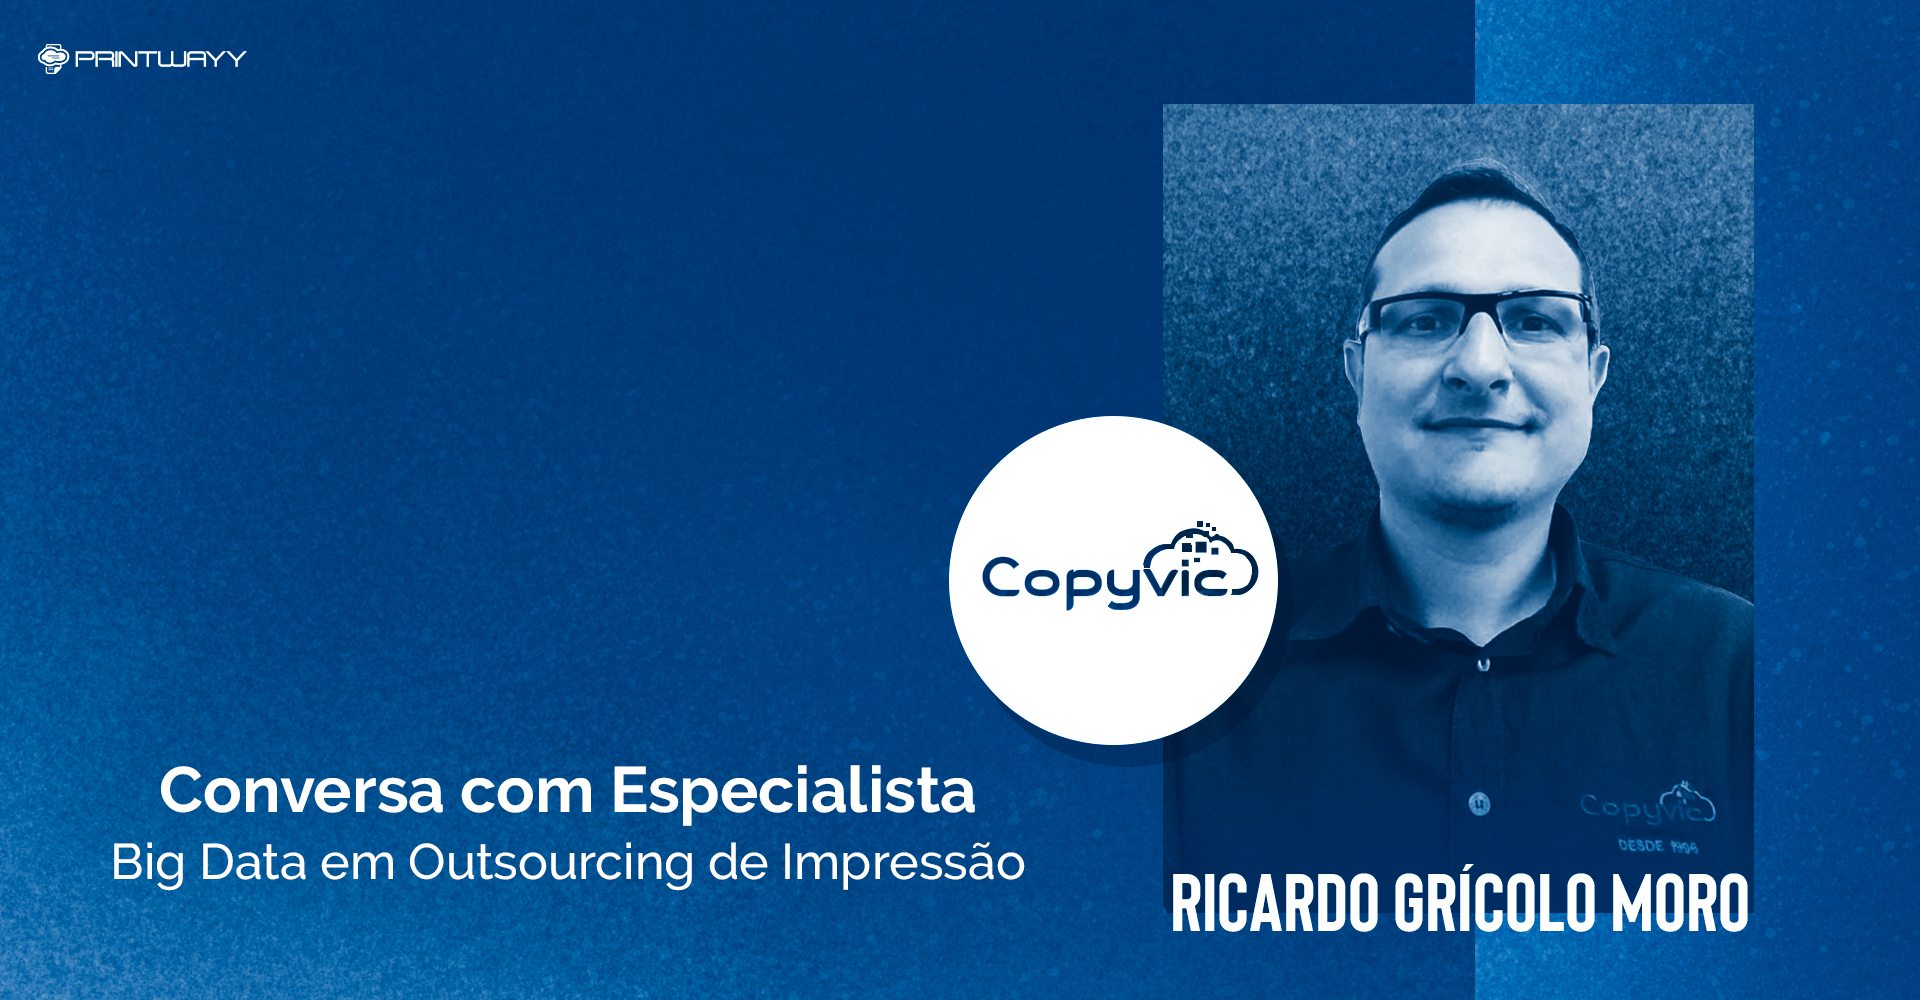 Fotografia de Ricardo Grícolo Moro e logotipo da empresa Copyvic. A imagem ilustra a conversa com especialista em outsourcing de impressão.